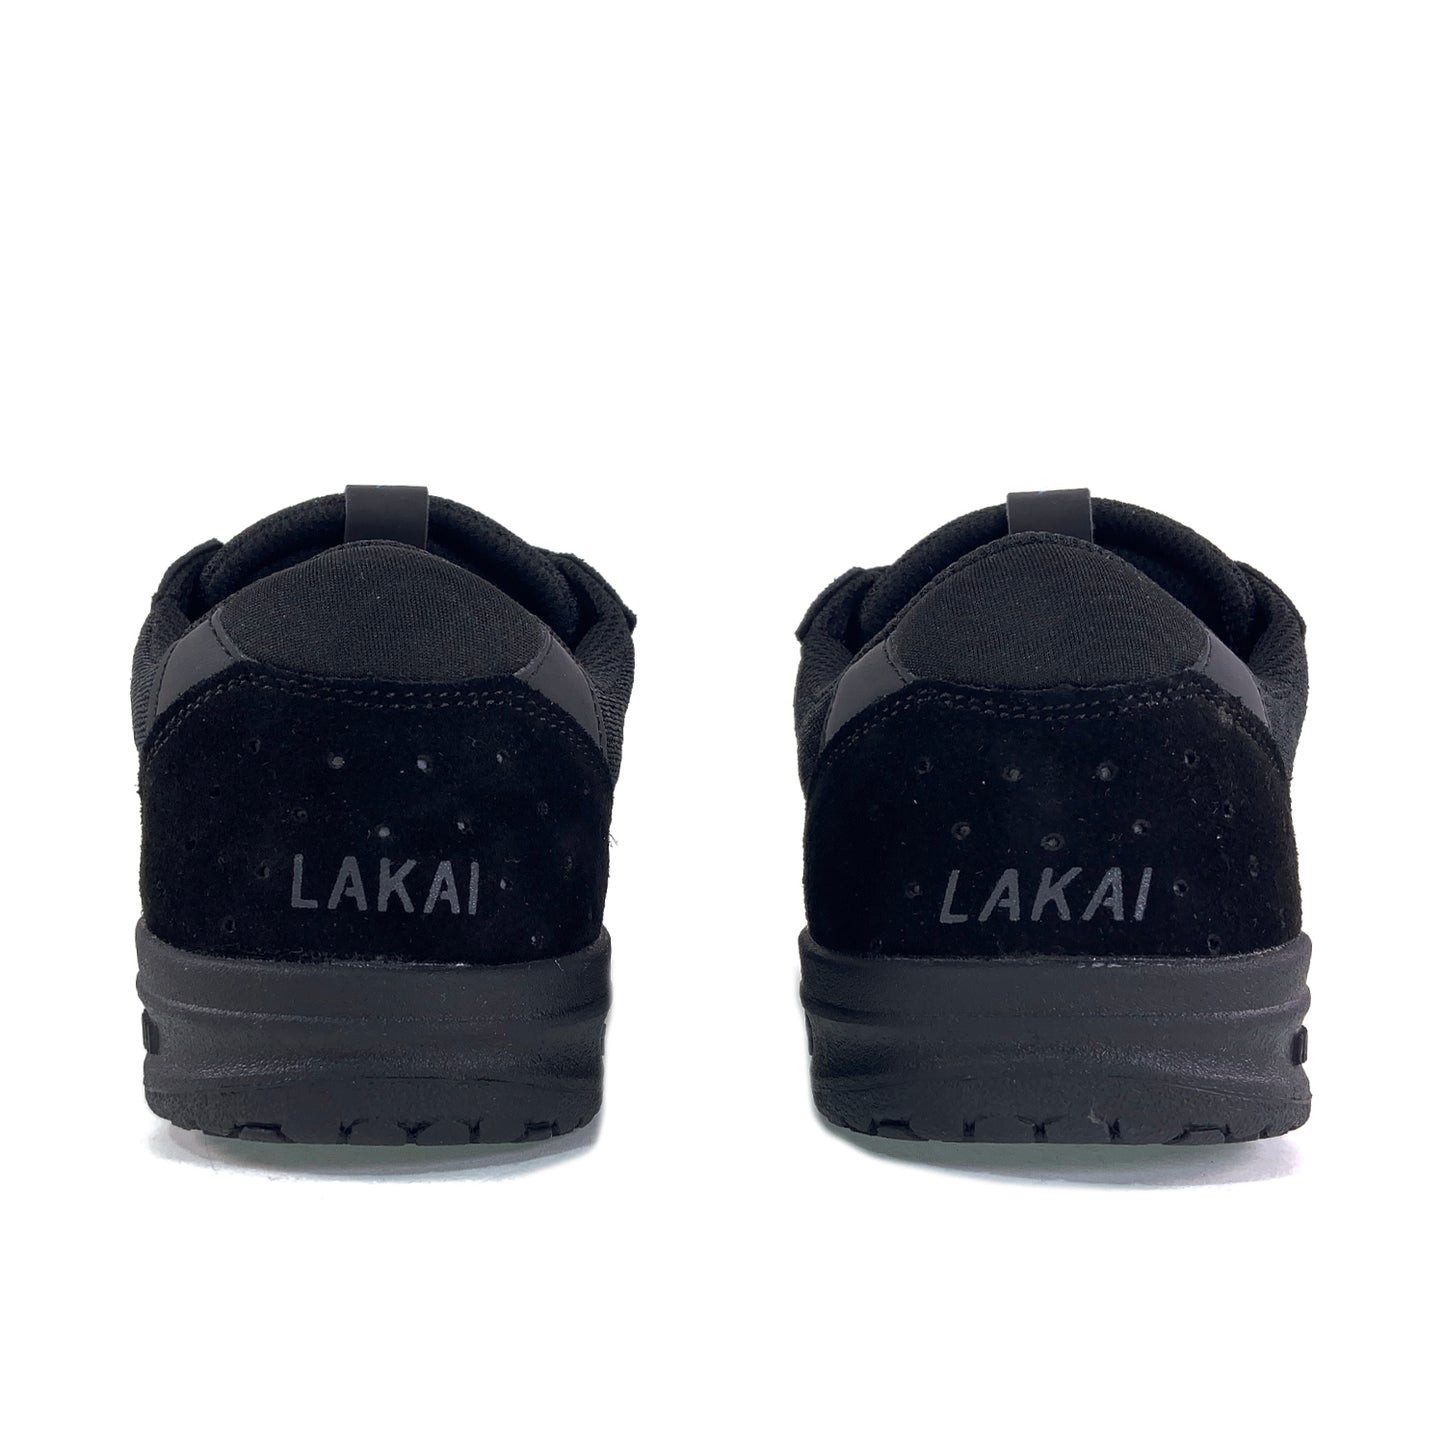 Lakai Atlantic Shoe - Black / Black Suede - Prime Delux Store